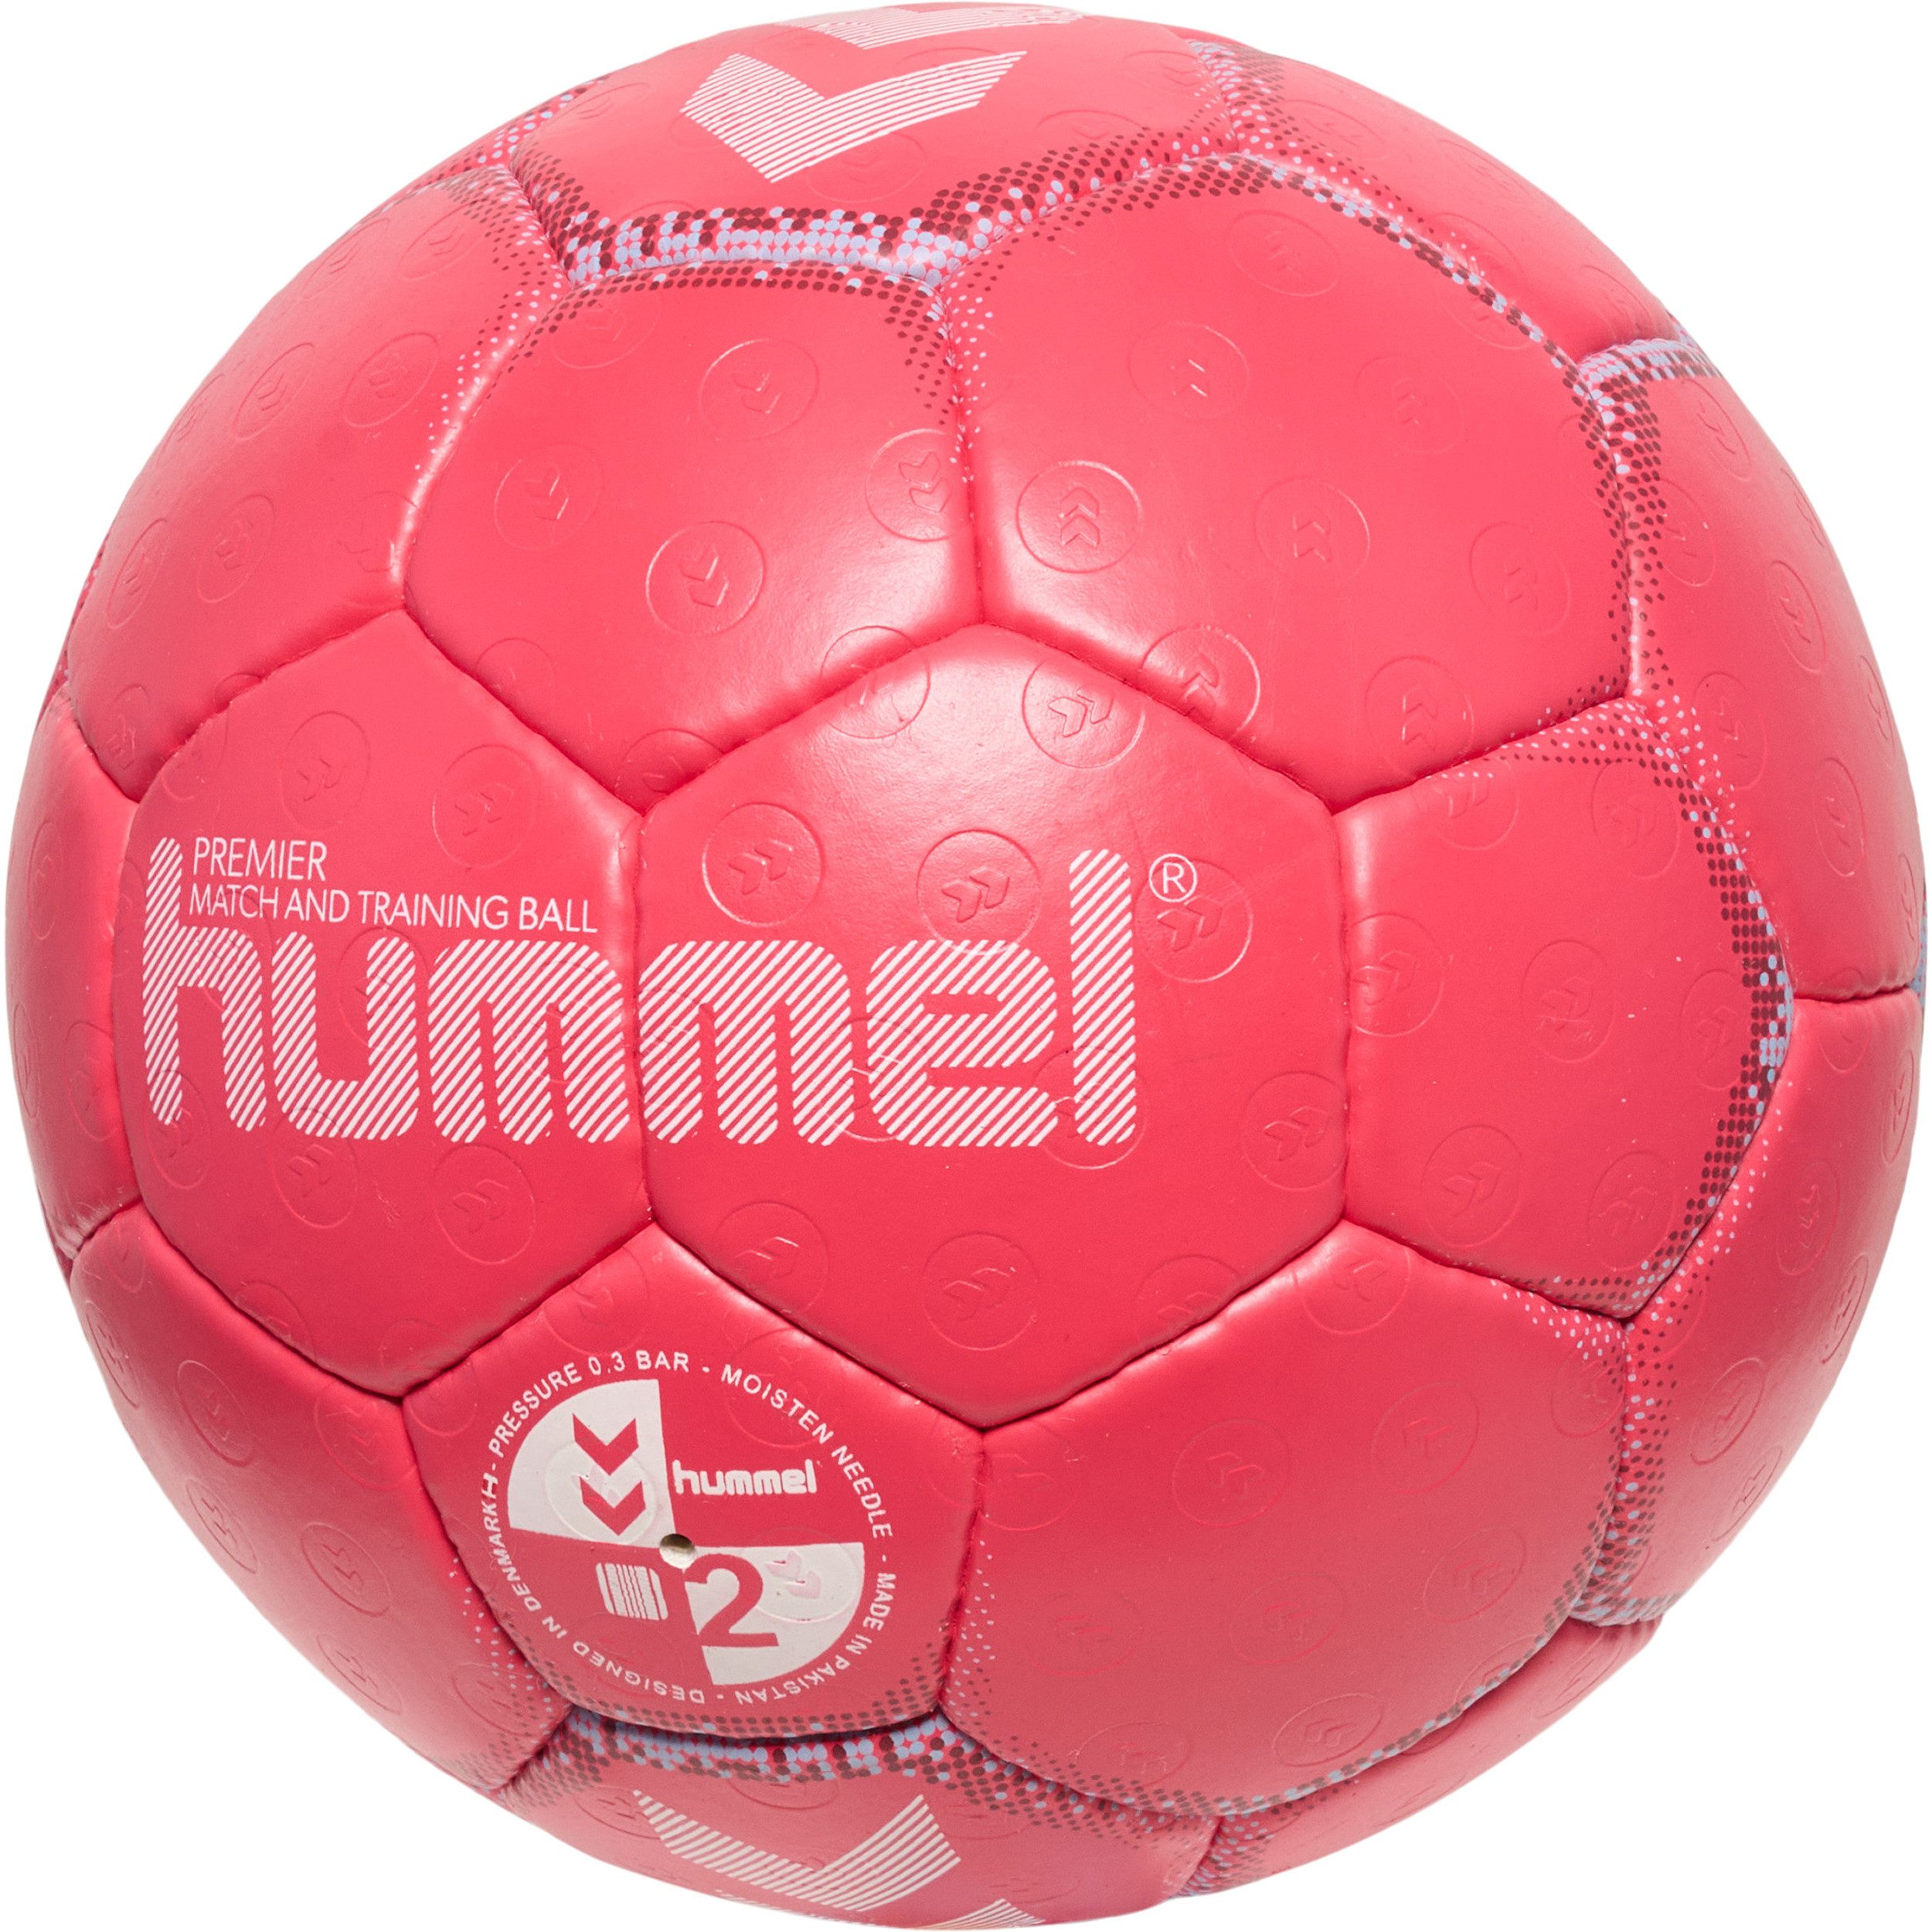 hummel Handball Handball Premier